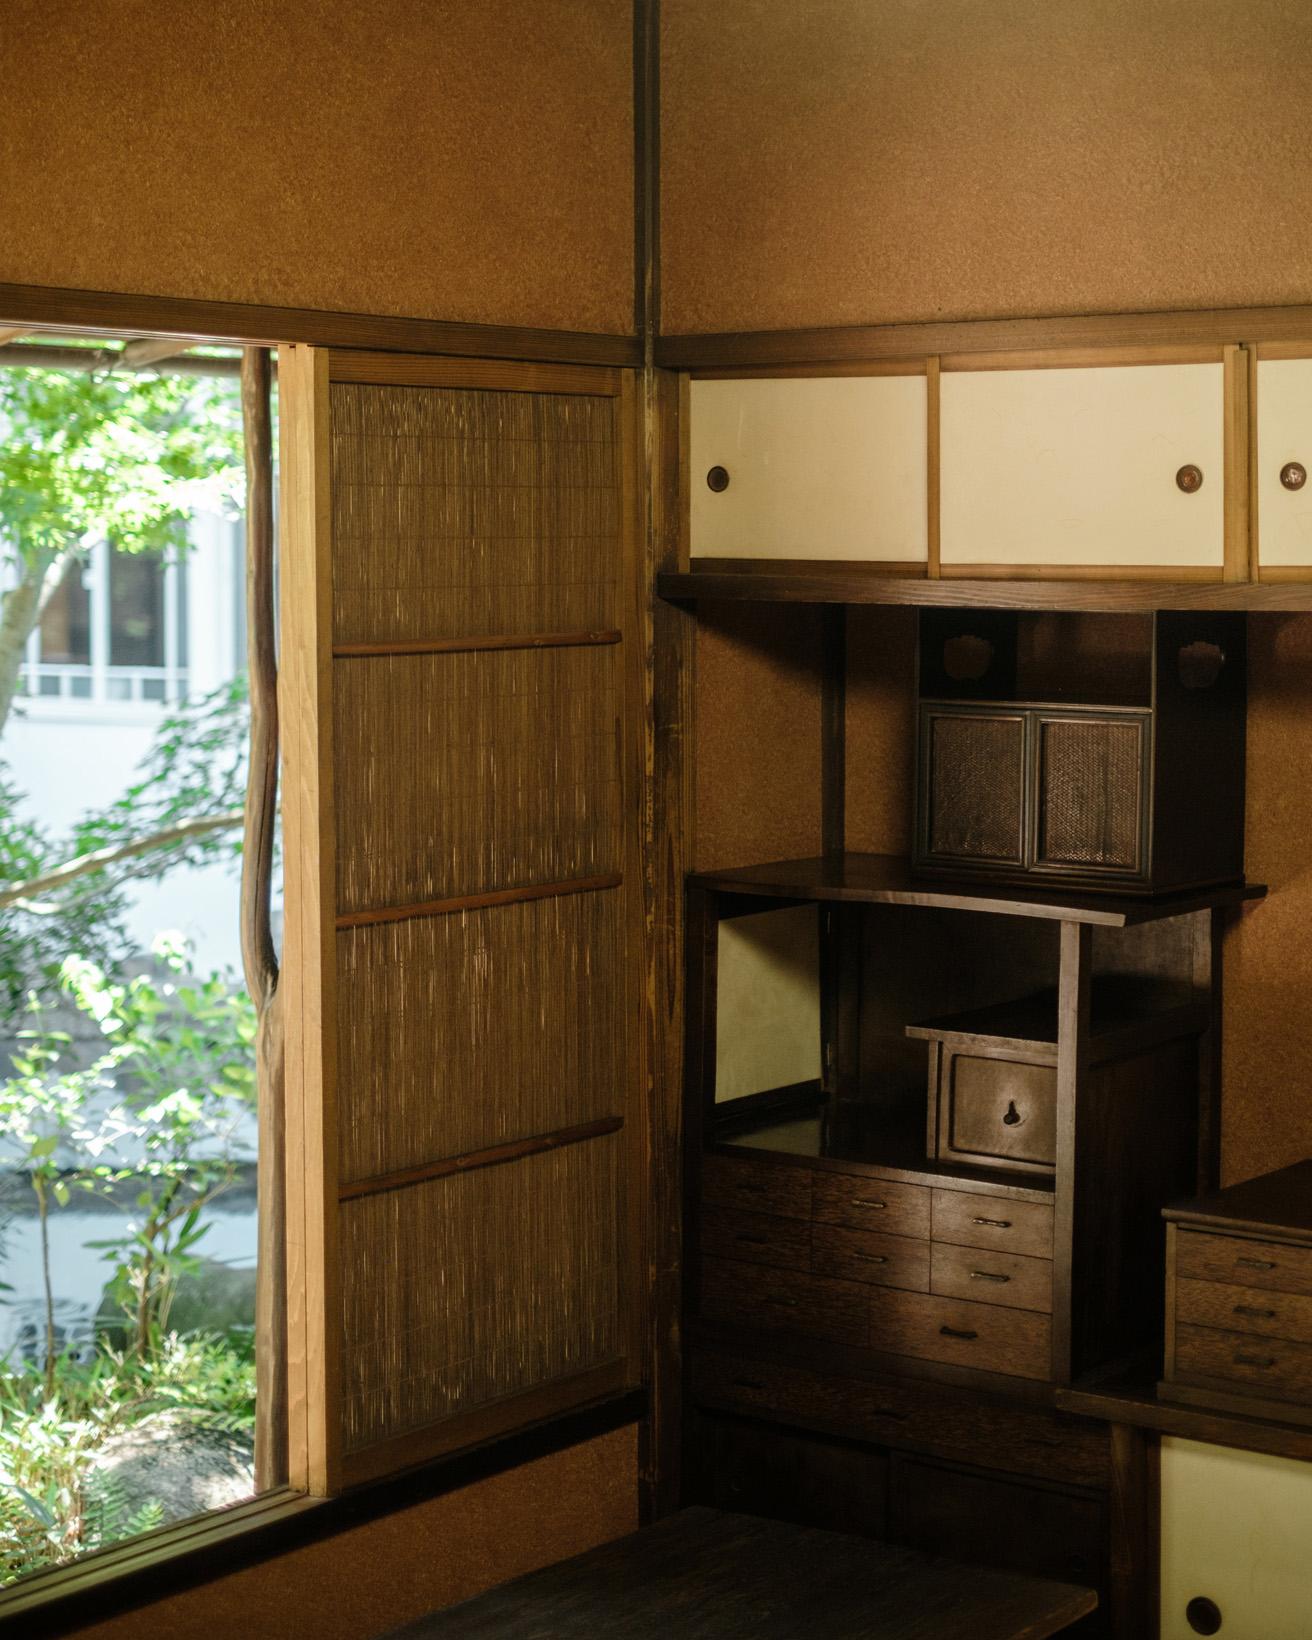 数寄屋造で藁壁を採用した1階の居住部分。炉が切ってあるため茶室とも呼ばれる朝倉の自室や、寝室が並んでいる。